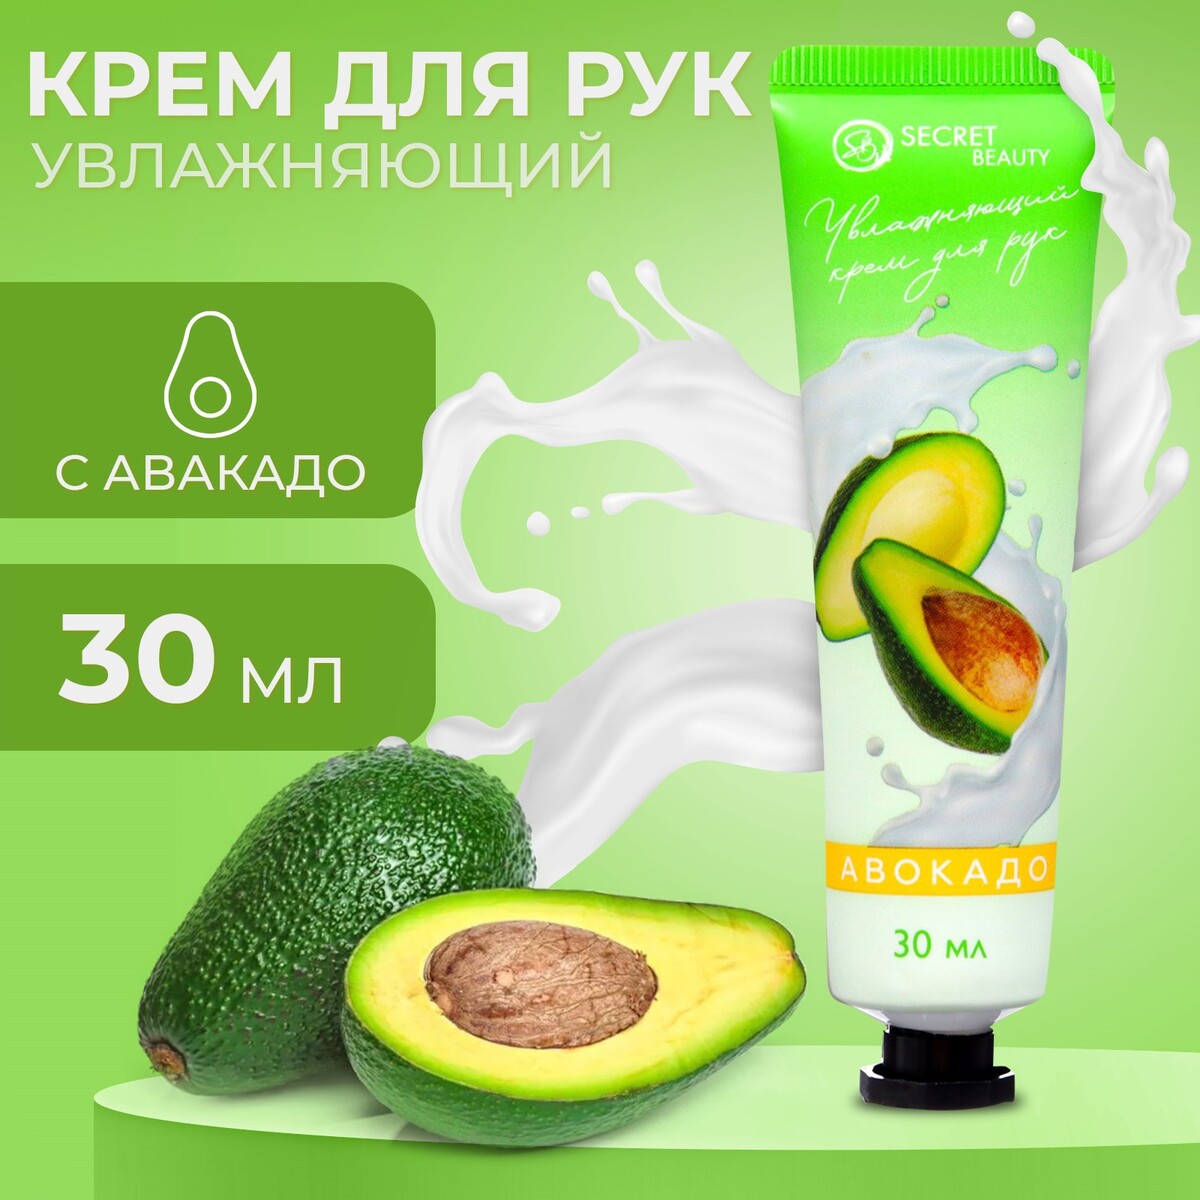 Крем для рук с экстрактом авокадо, увлажняющий, 30 мл крем для тела sadoer 200 г с экстрактом авокадо